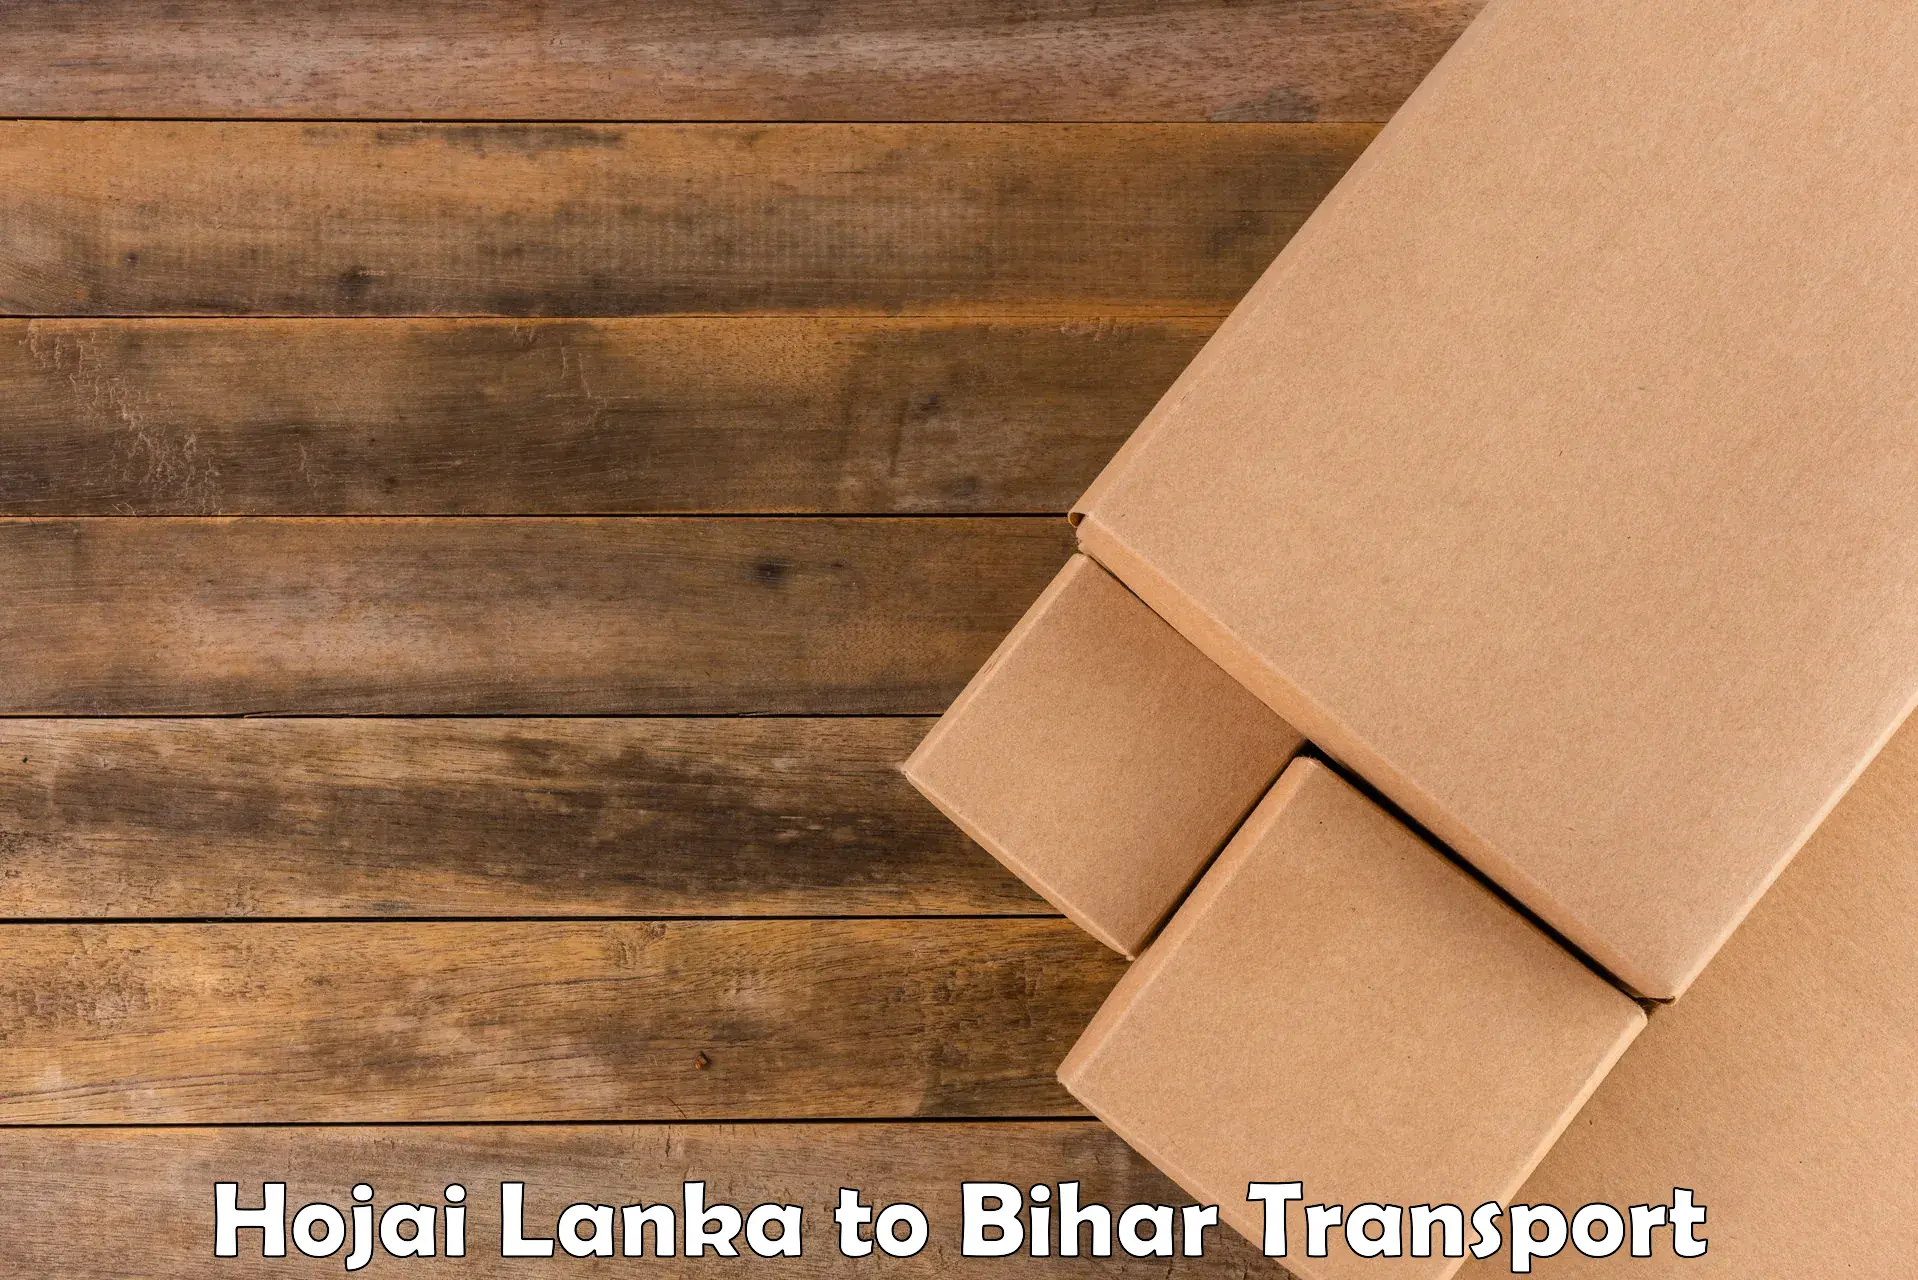 Nearby transport service Hojai Lanka to Pupri